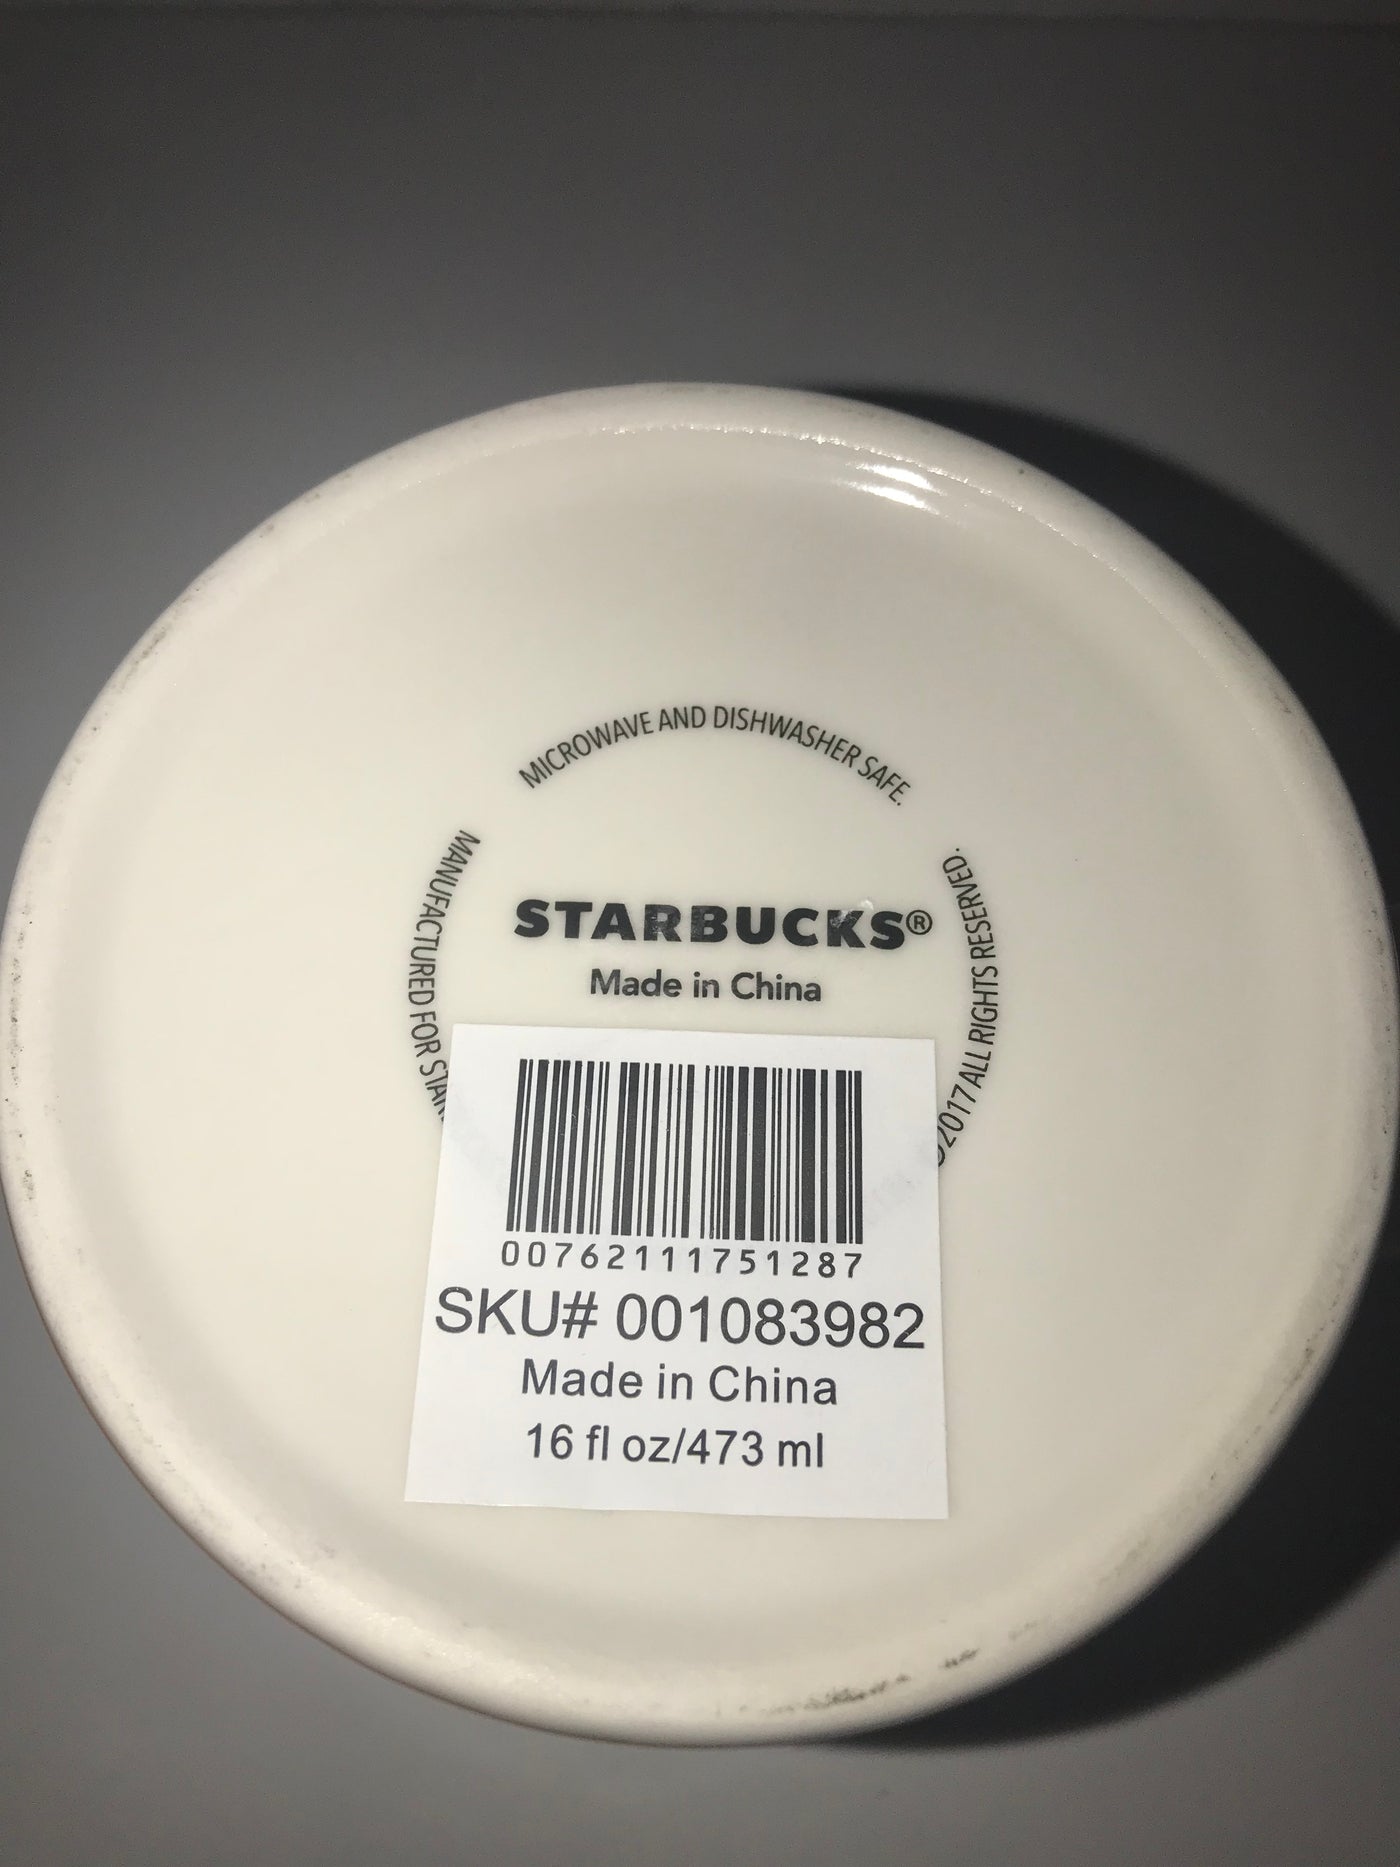 Starbucks Global Icon Collection Hong Kong Ceramic Coffee Mug New